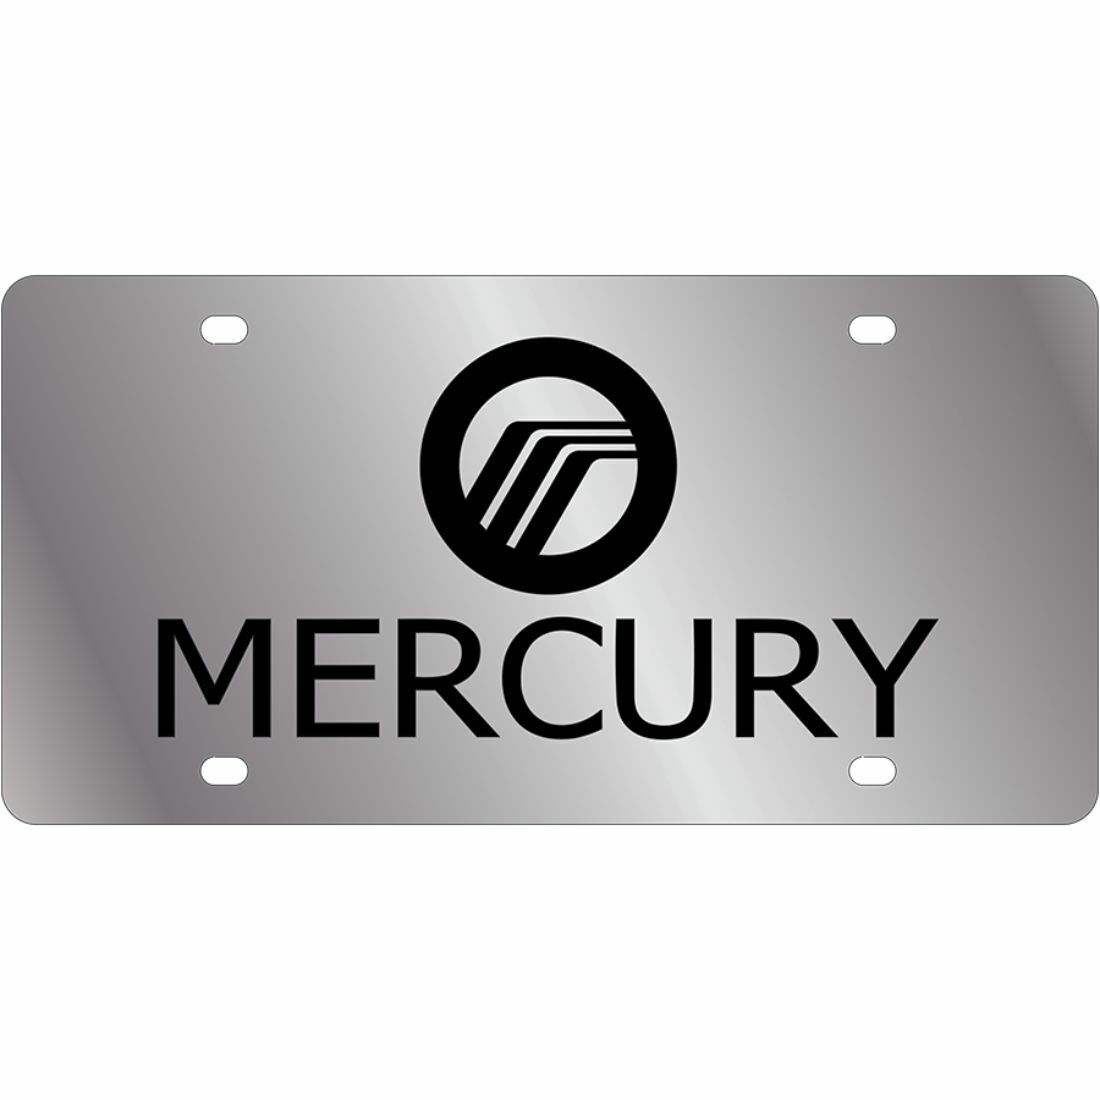 Stainless Steel Plate Mercury Black Logo Black License Plate Frame 3D Novelty